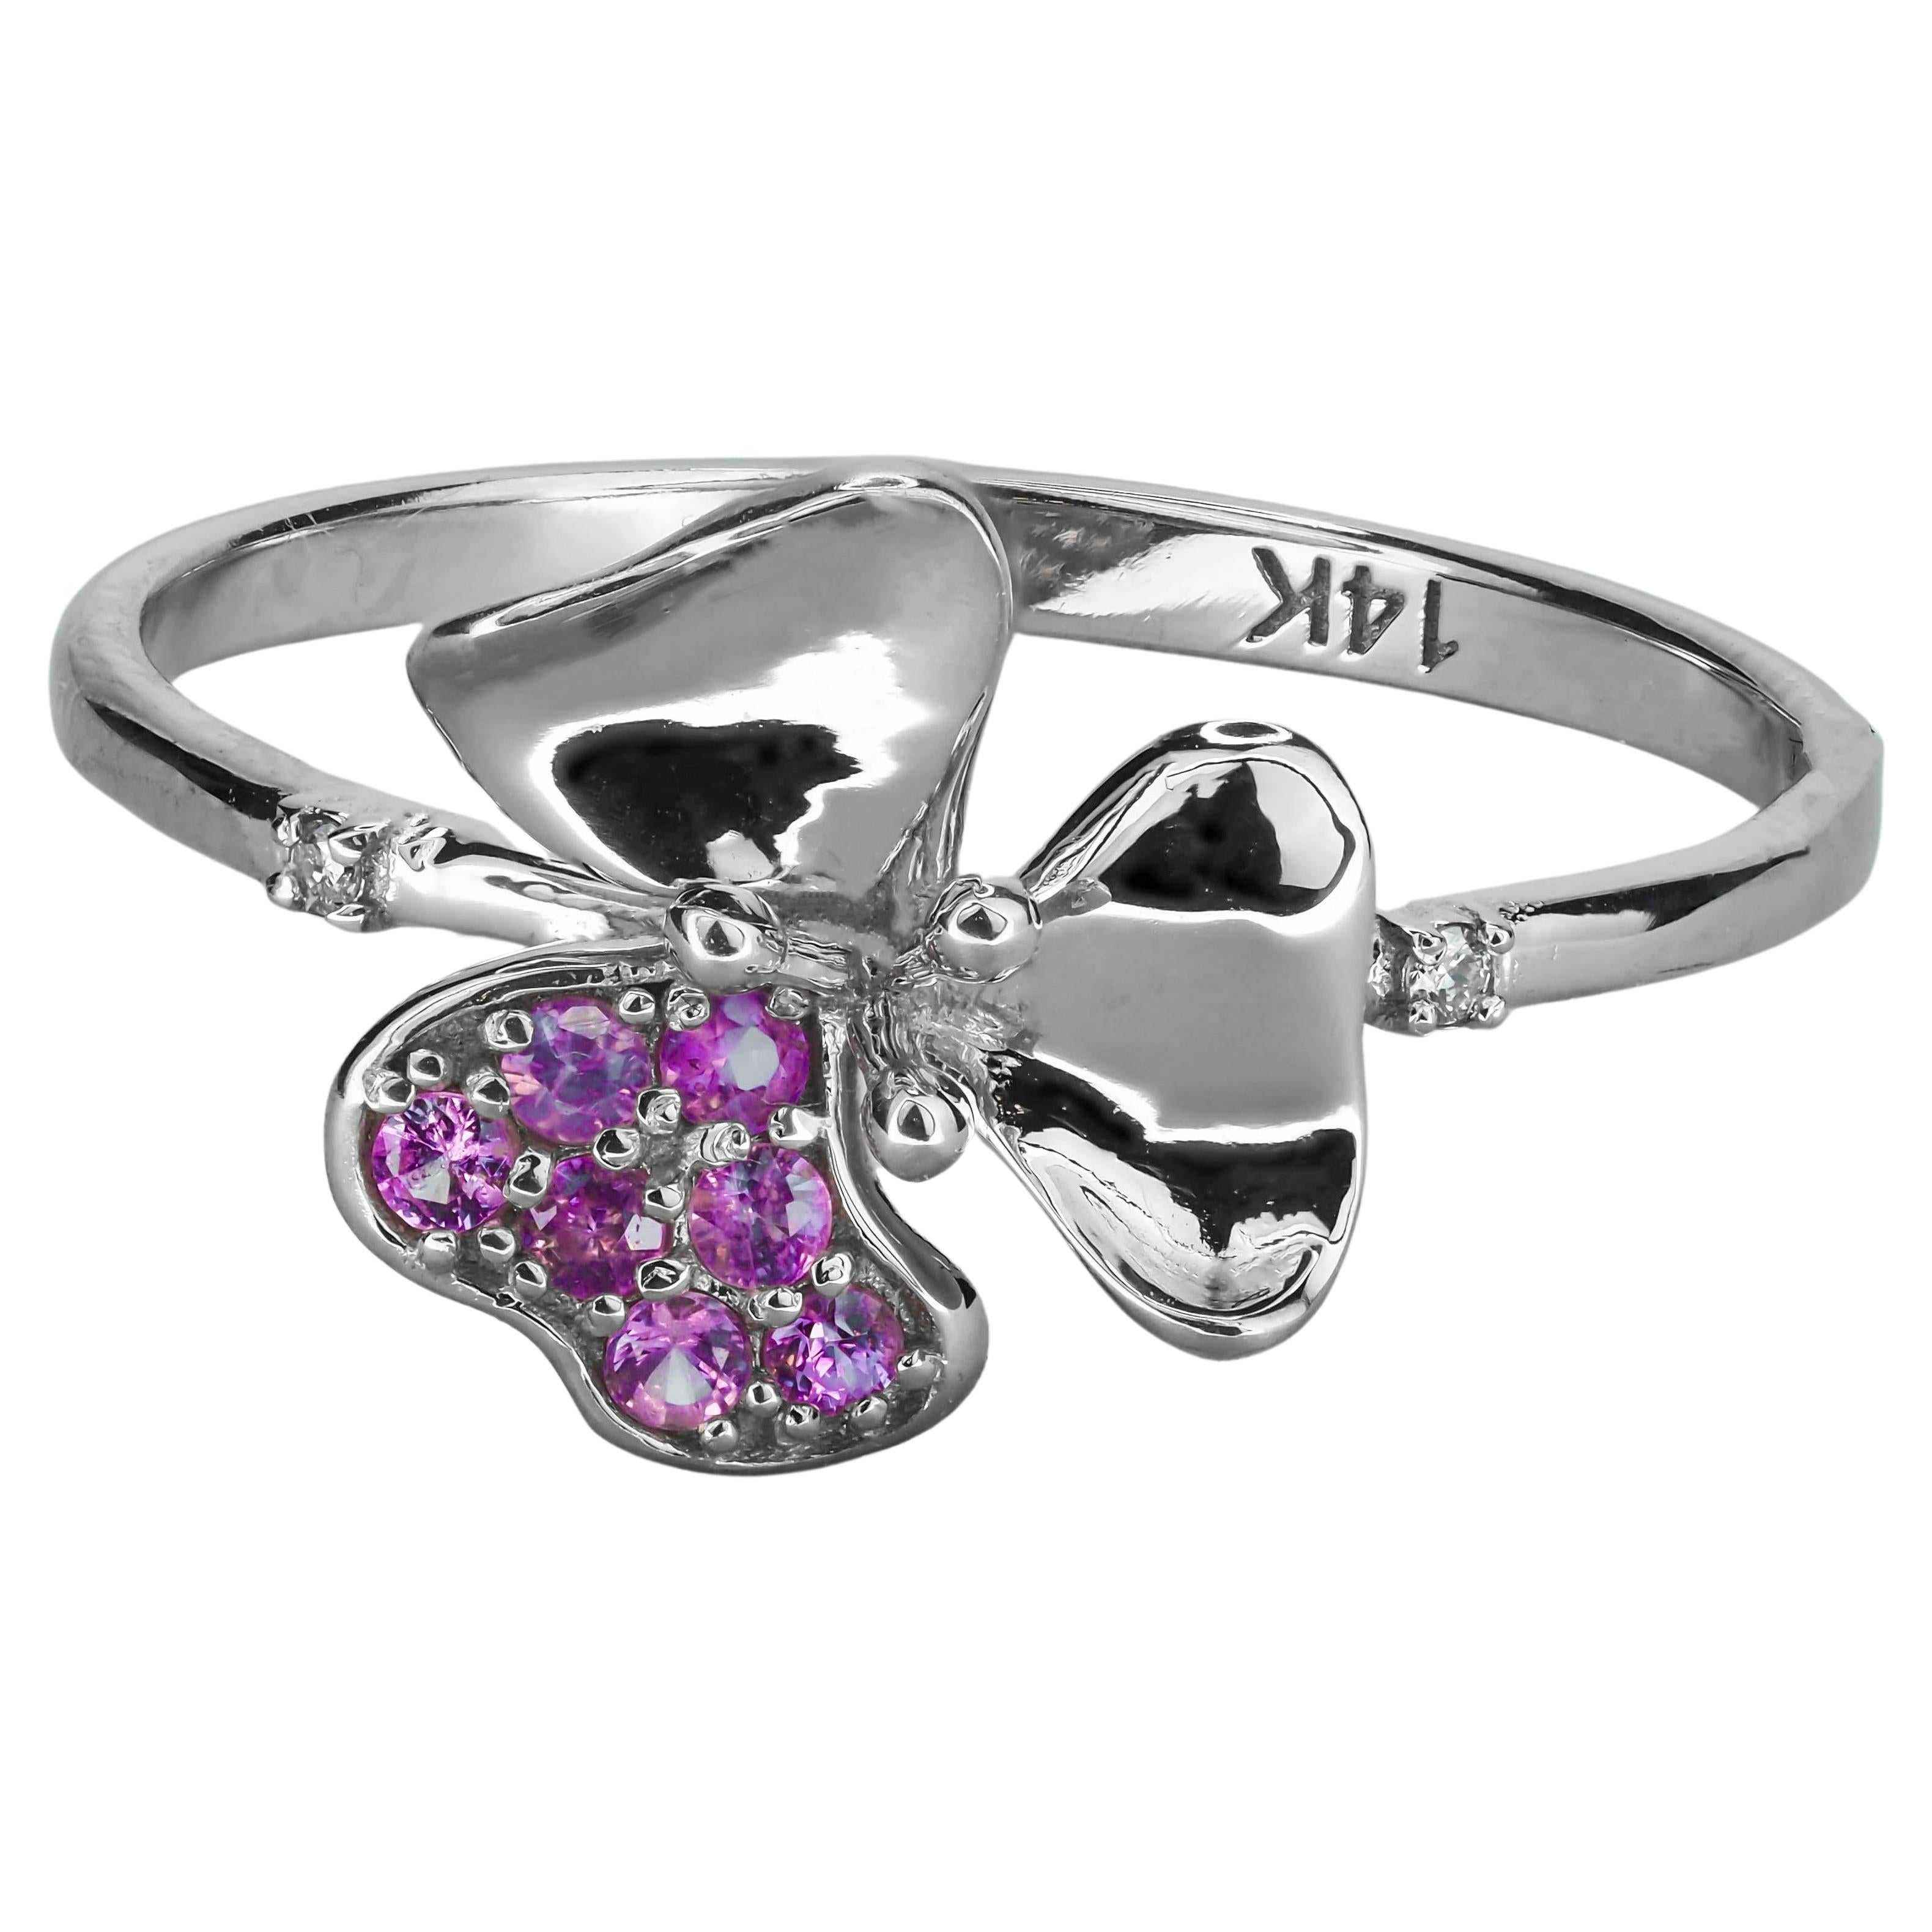 For Sale:  3 petal Flower 14k ring with gemstones.